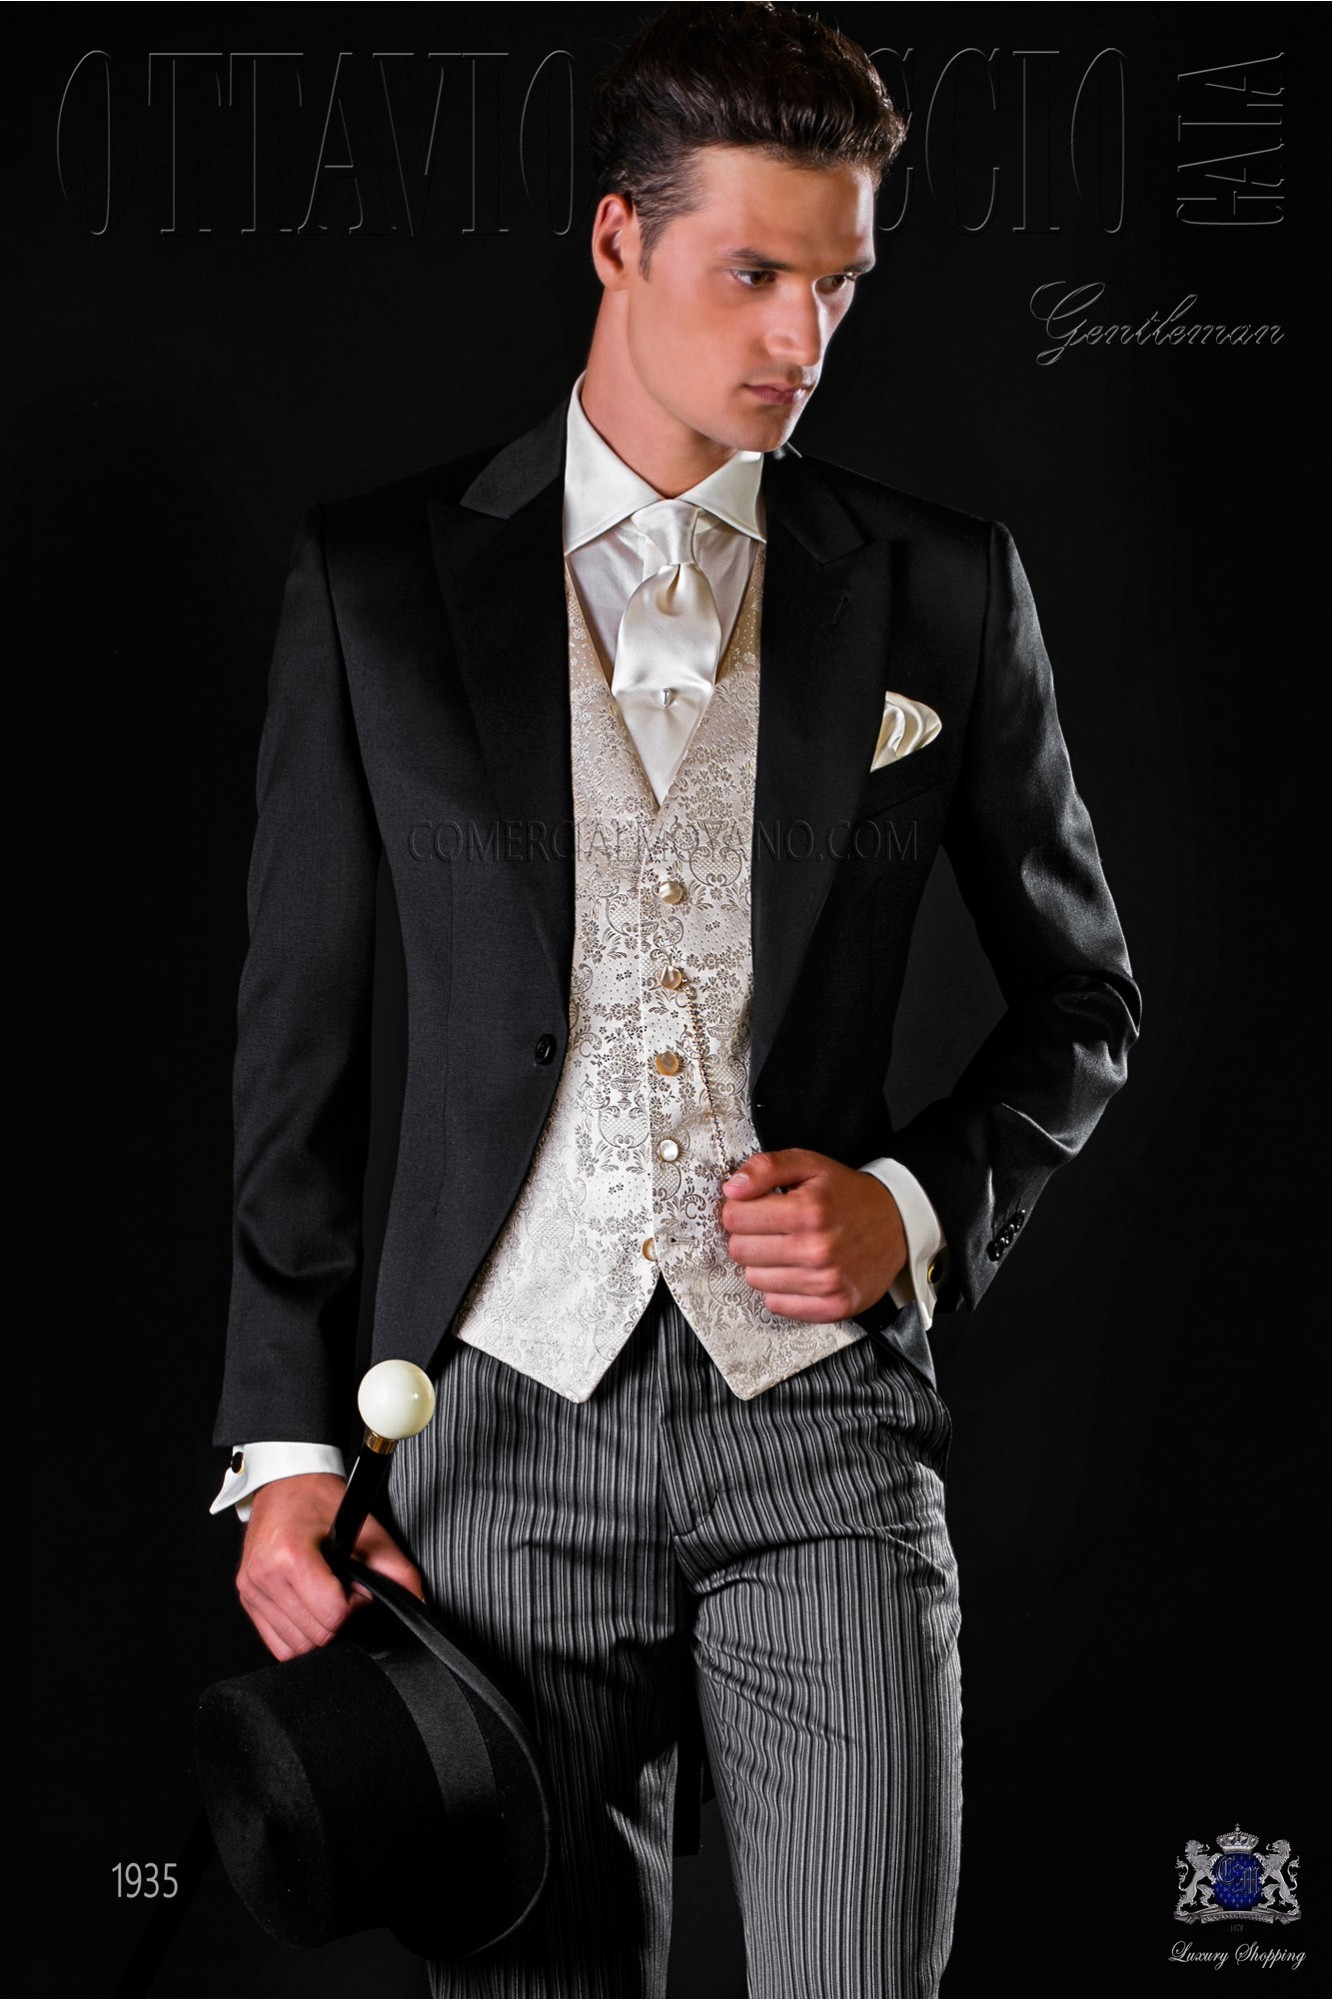 Chaqué negro pura lana con pantalón de etiqueta modelo: 1935 Mario Moyano colección Gentleman